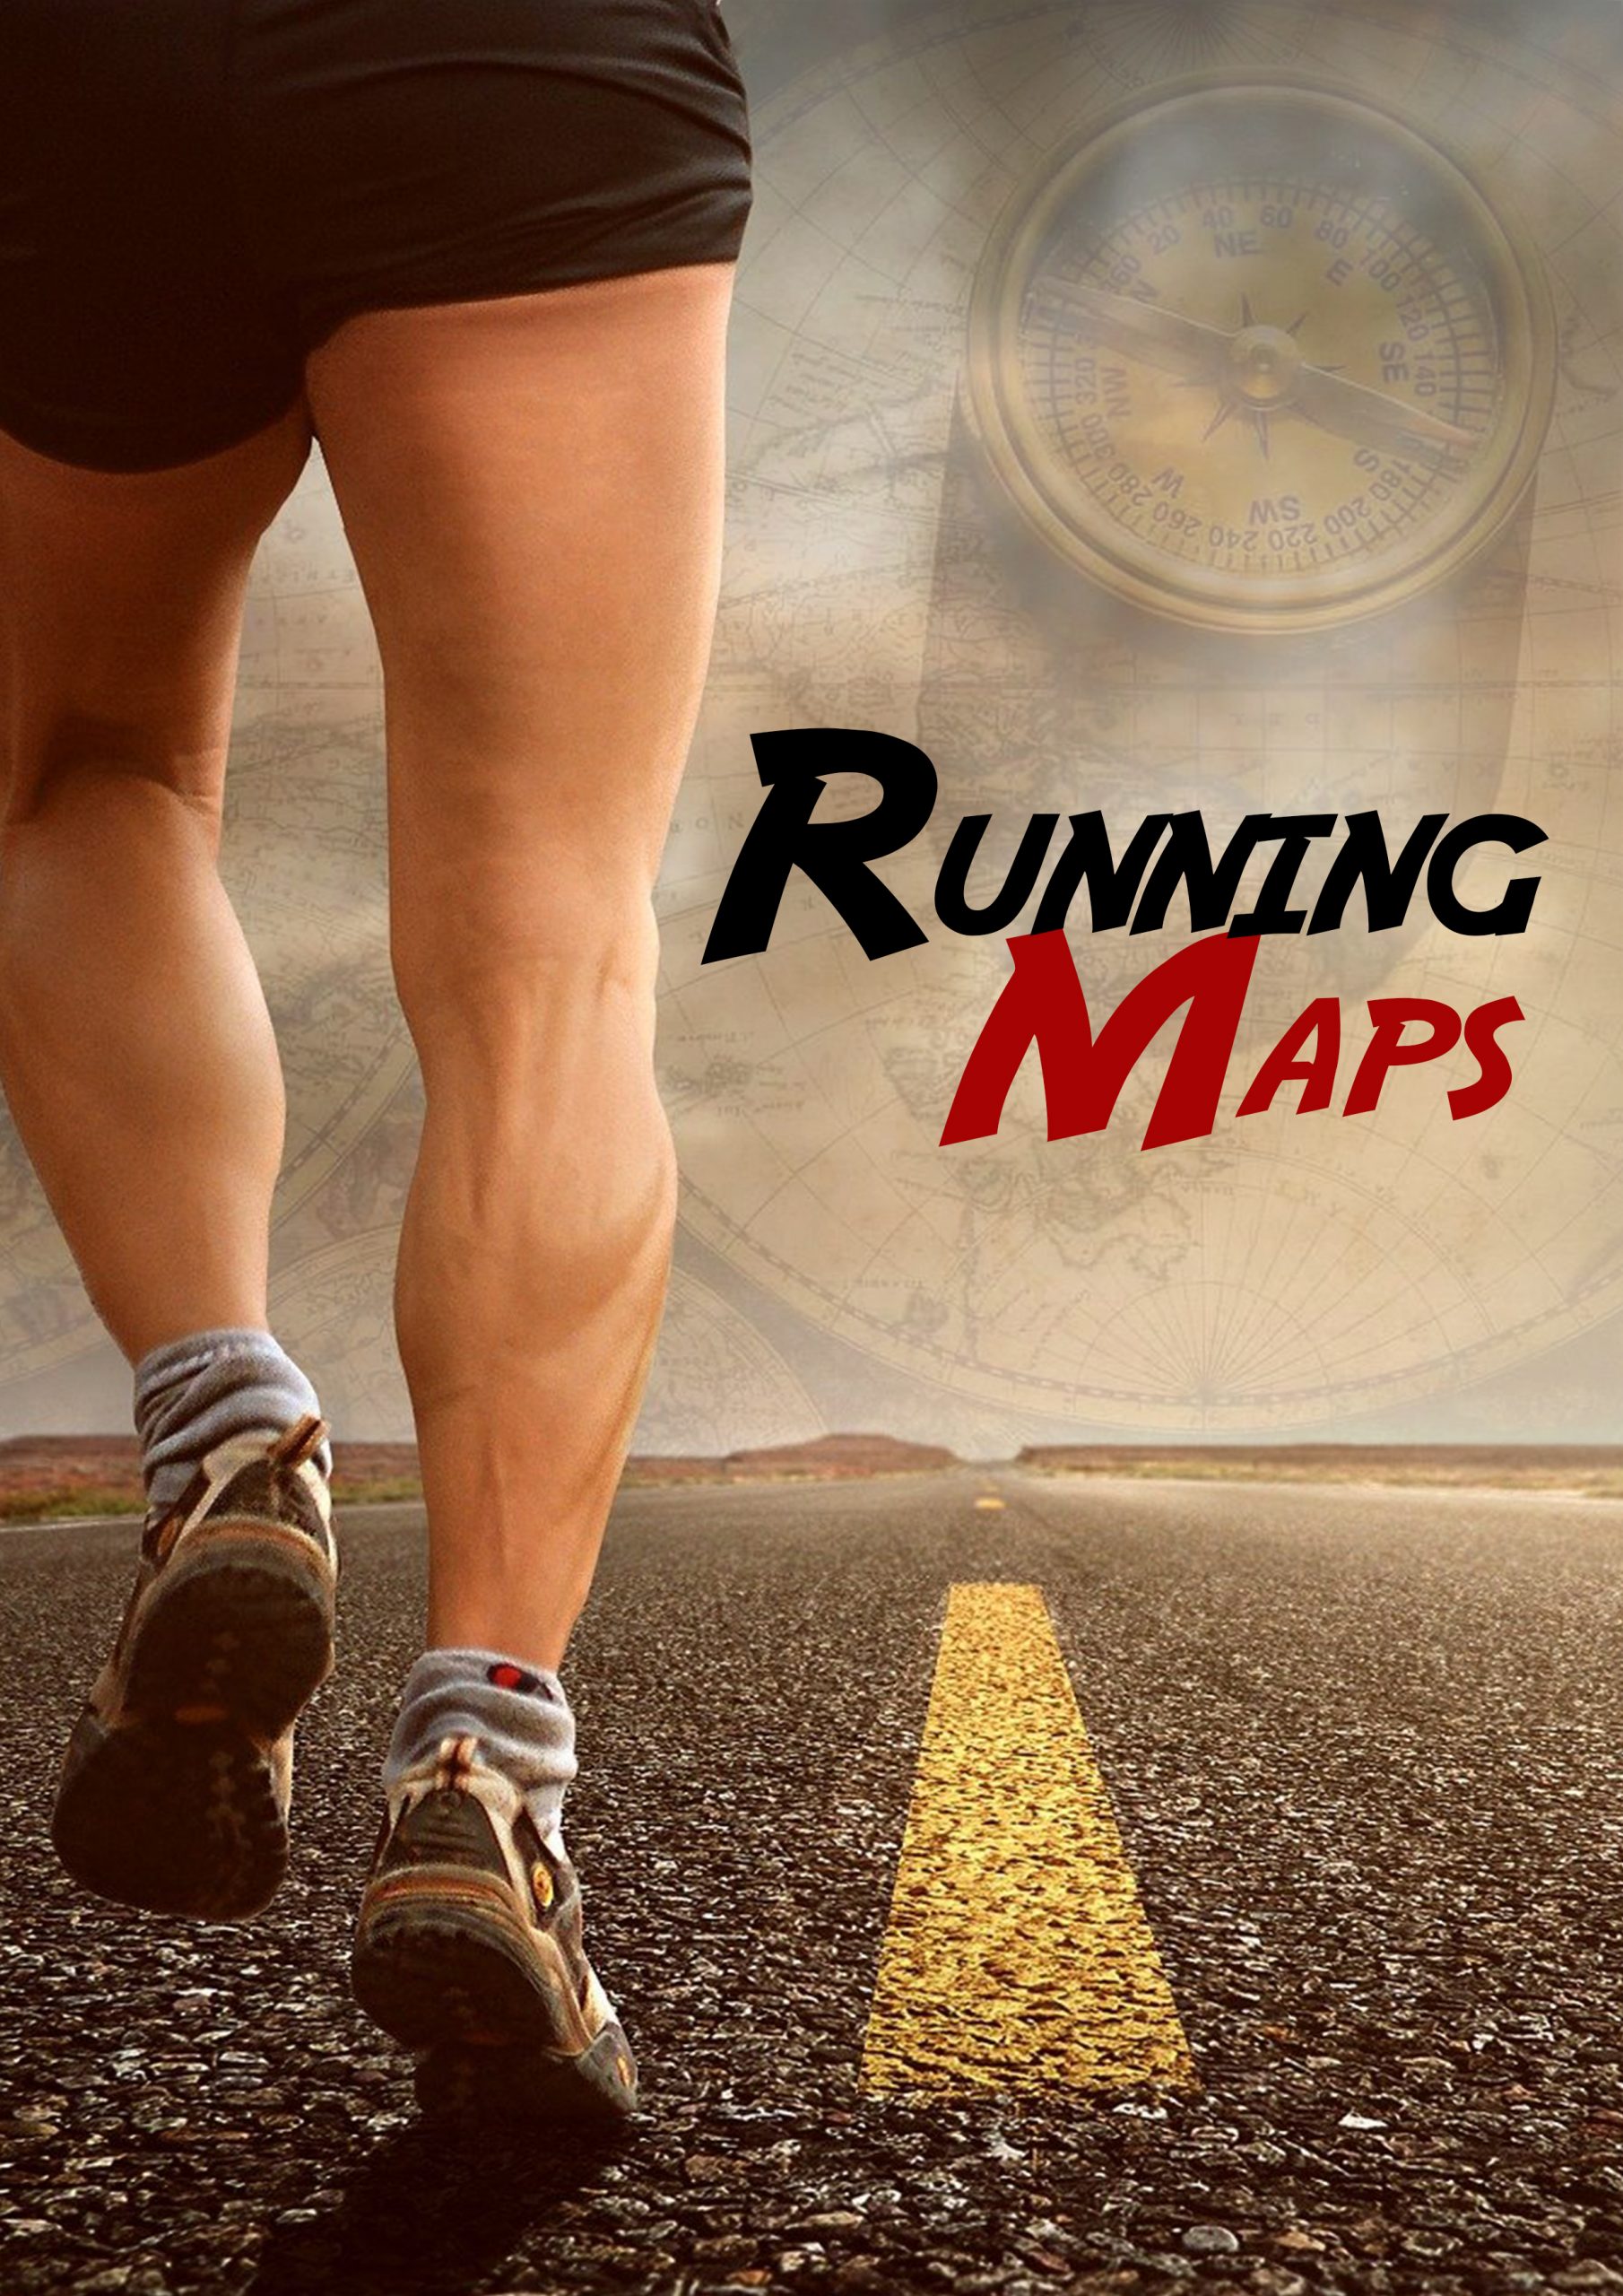 RUNNING MAPS